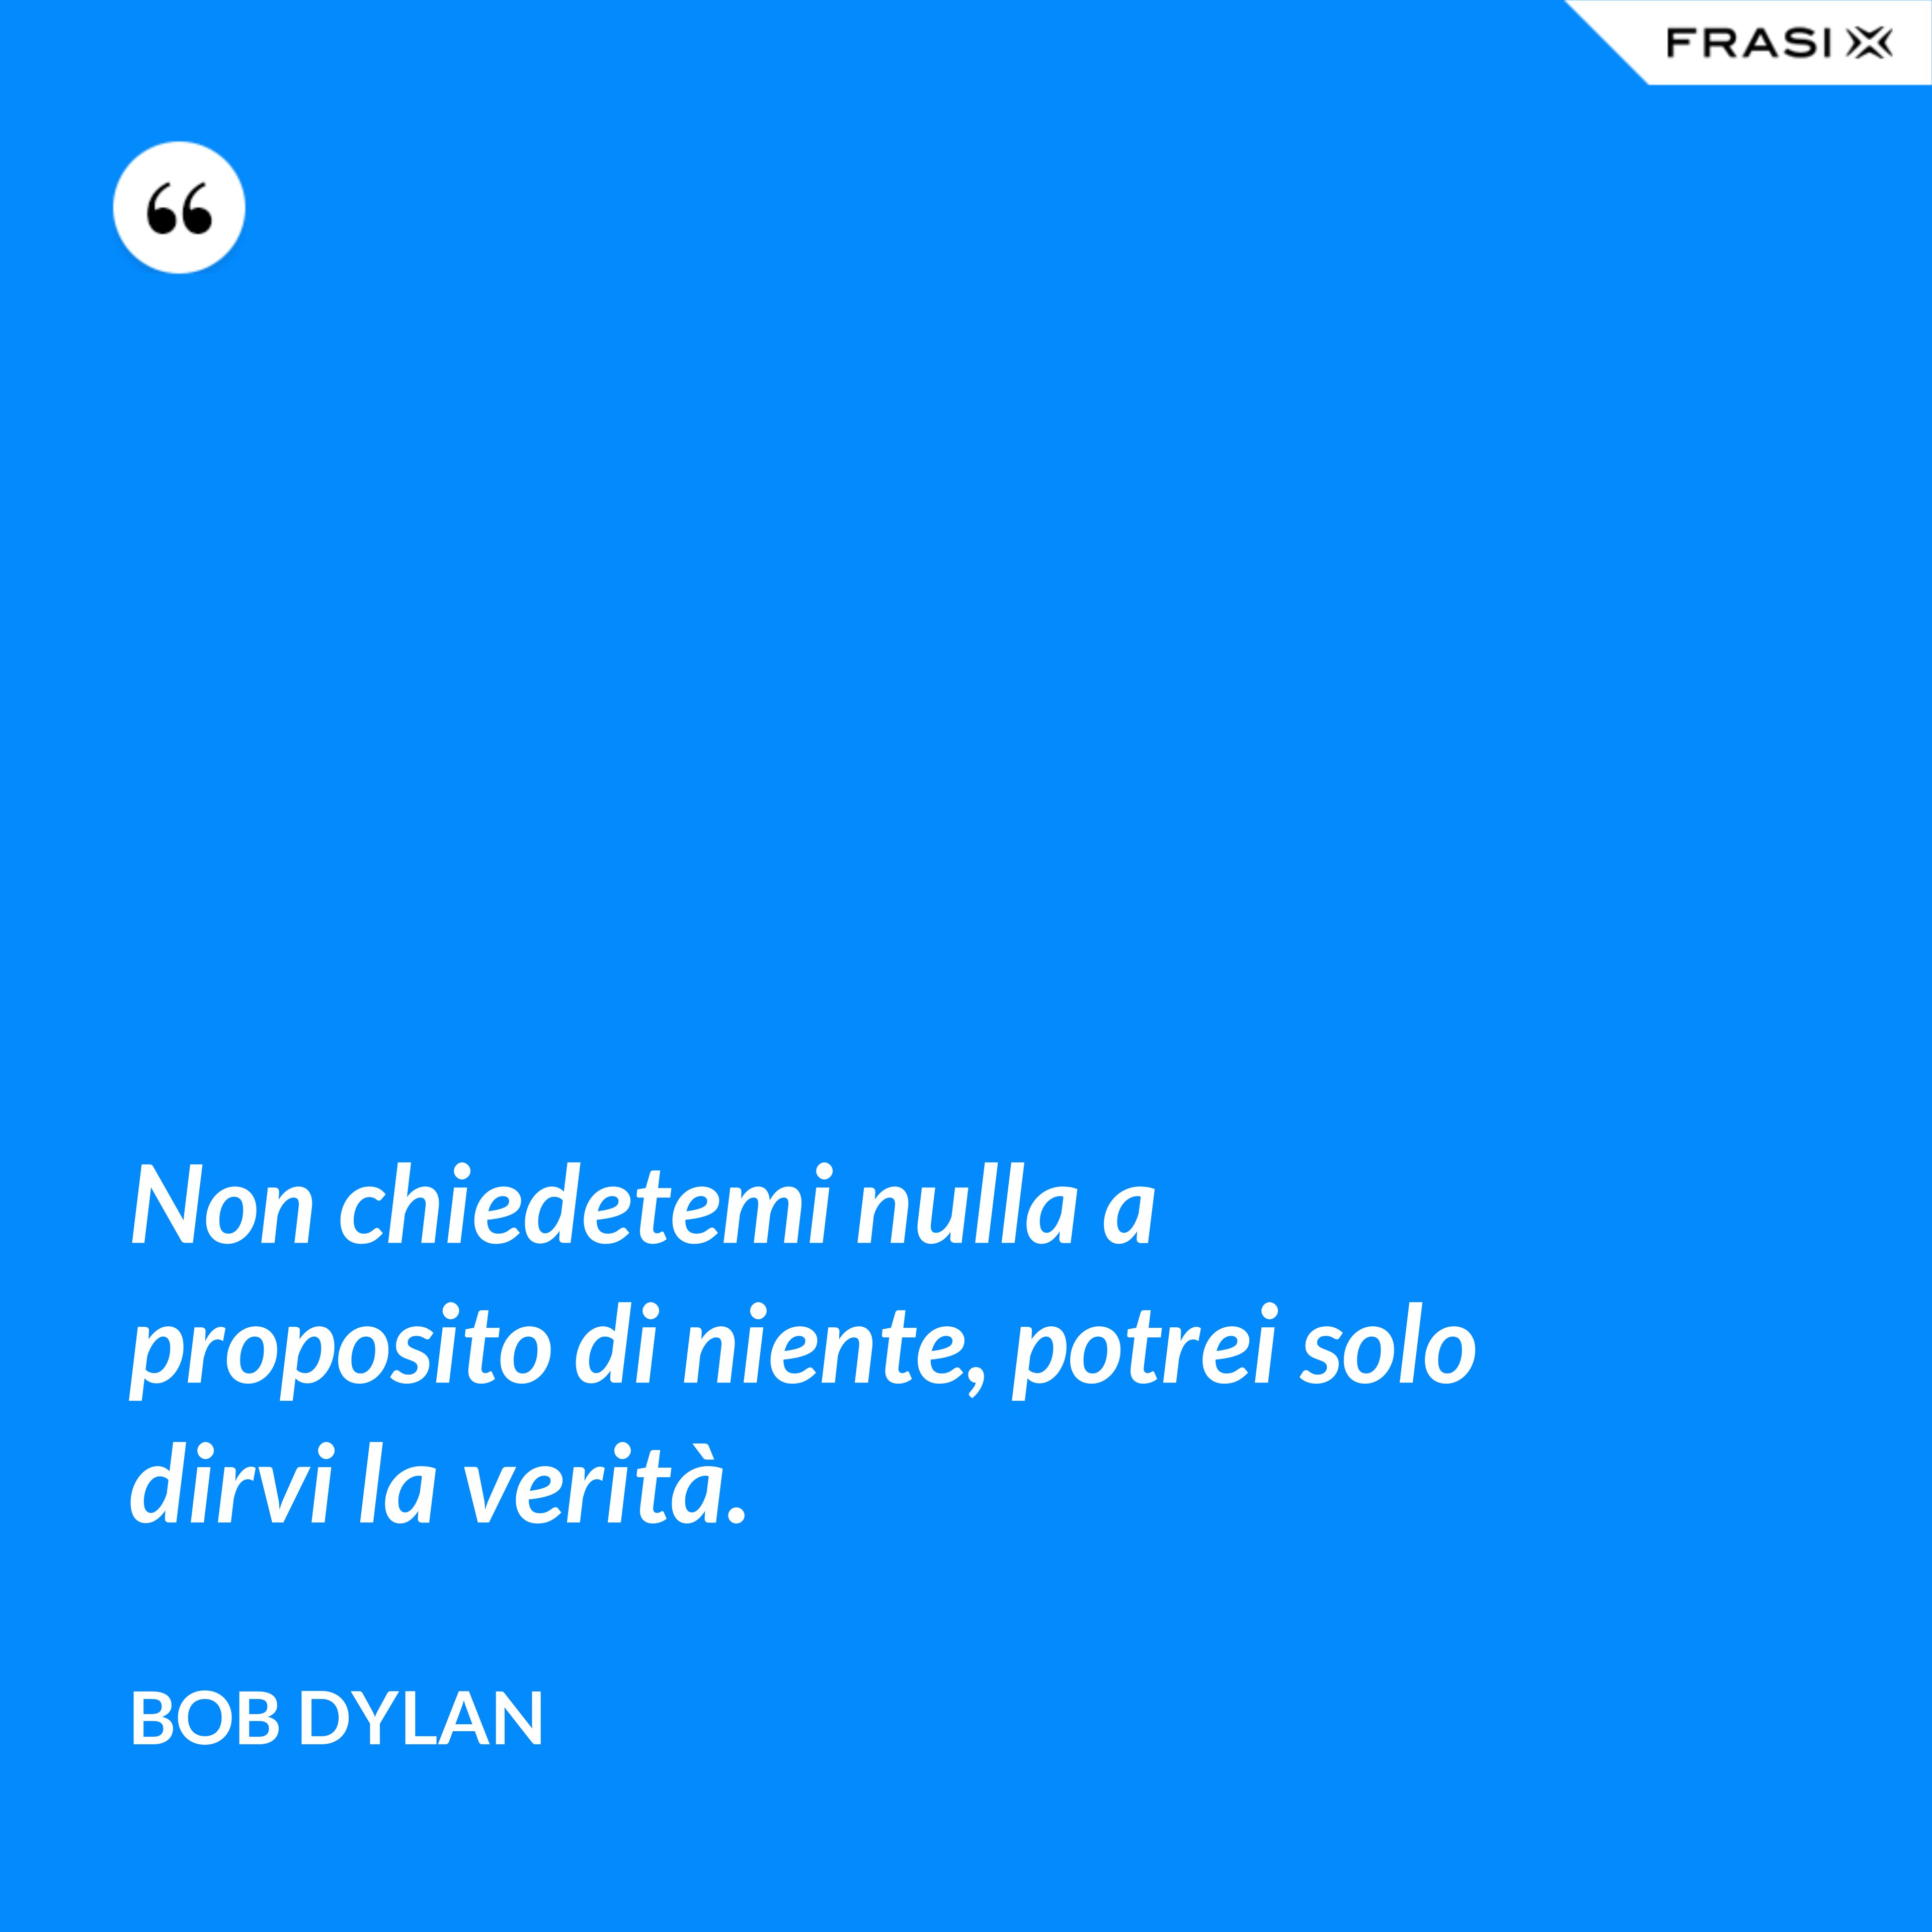 Non chiedetemi nulla a proposito di niente, potrei solo dirvi la verità. - Bob Dylan